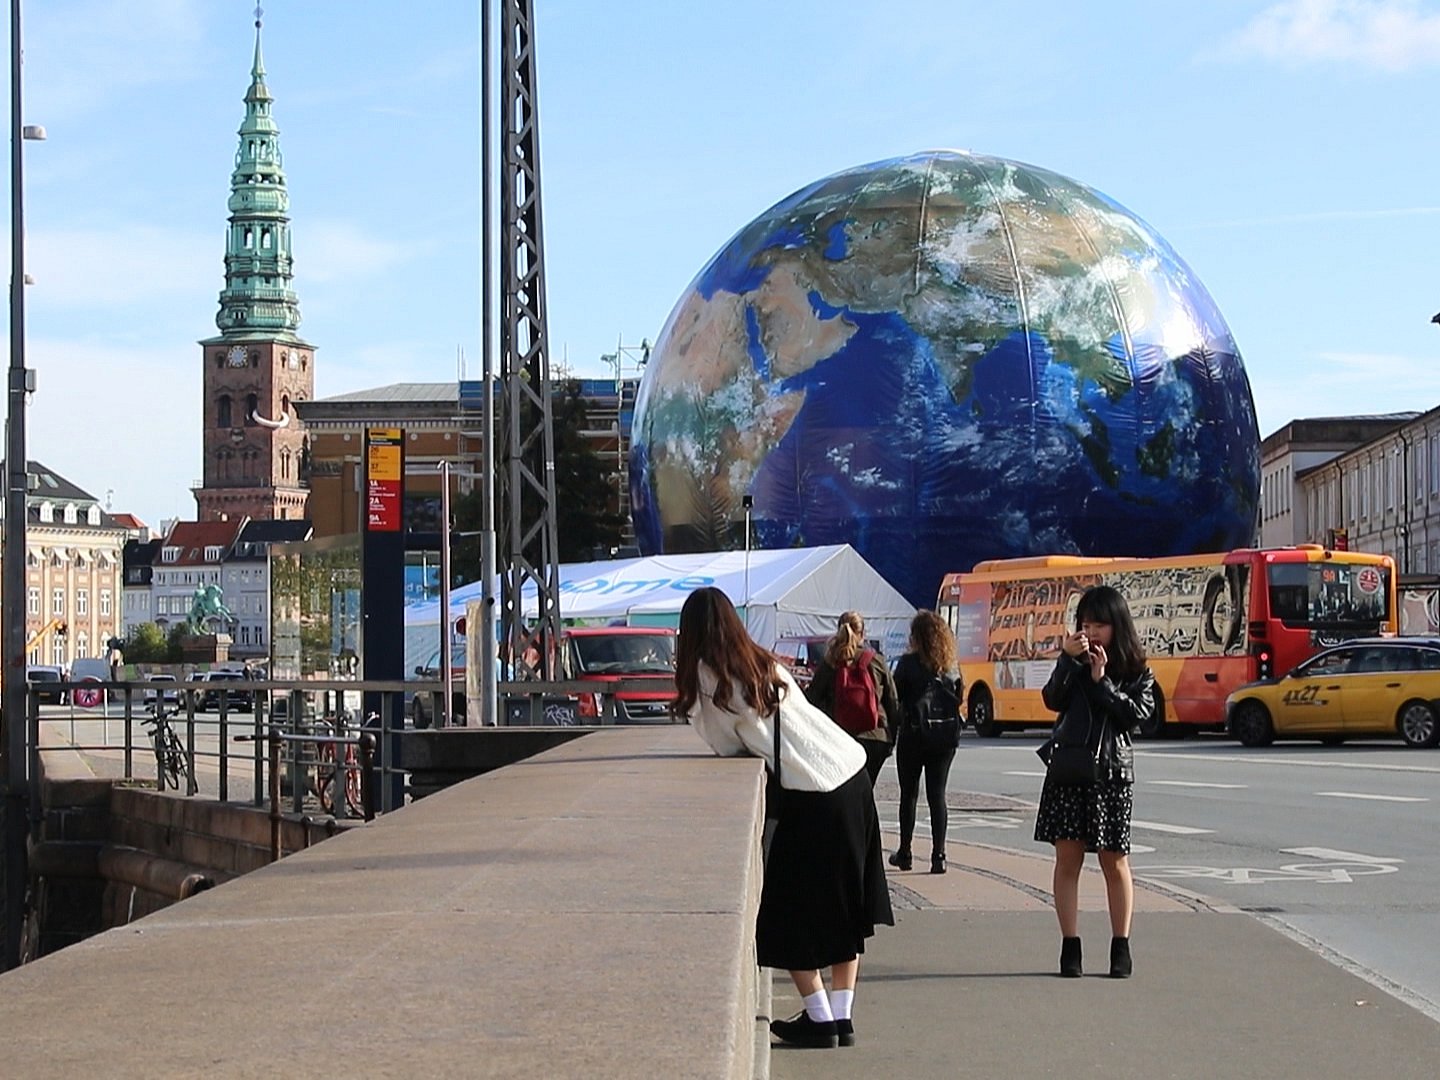 største globus er landet midt i København | TV 2 Kosmopol